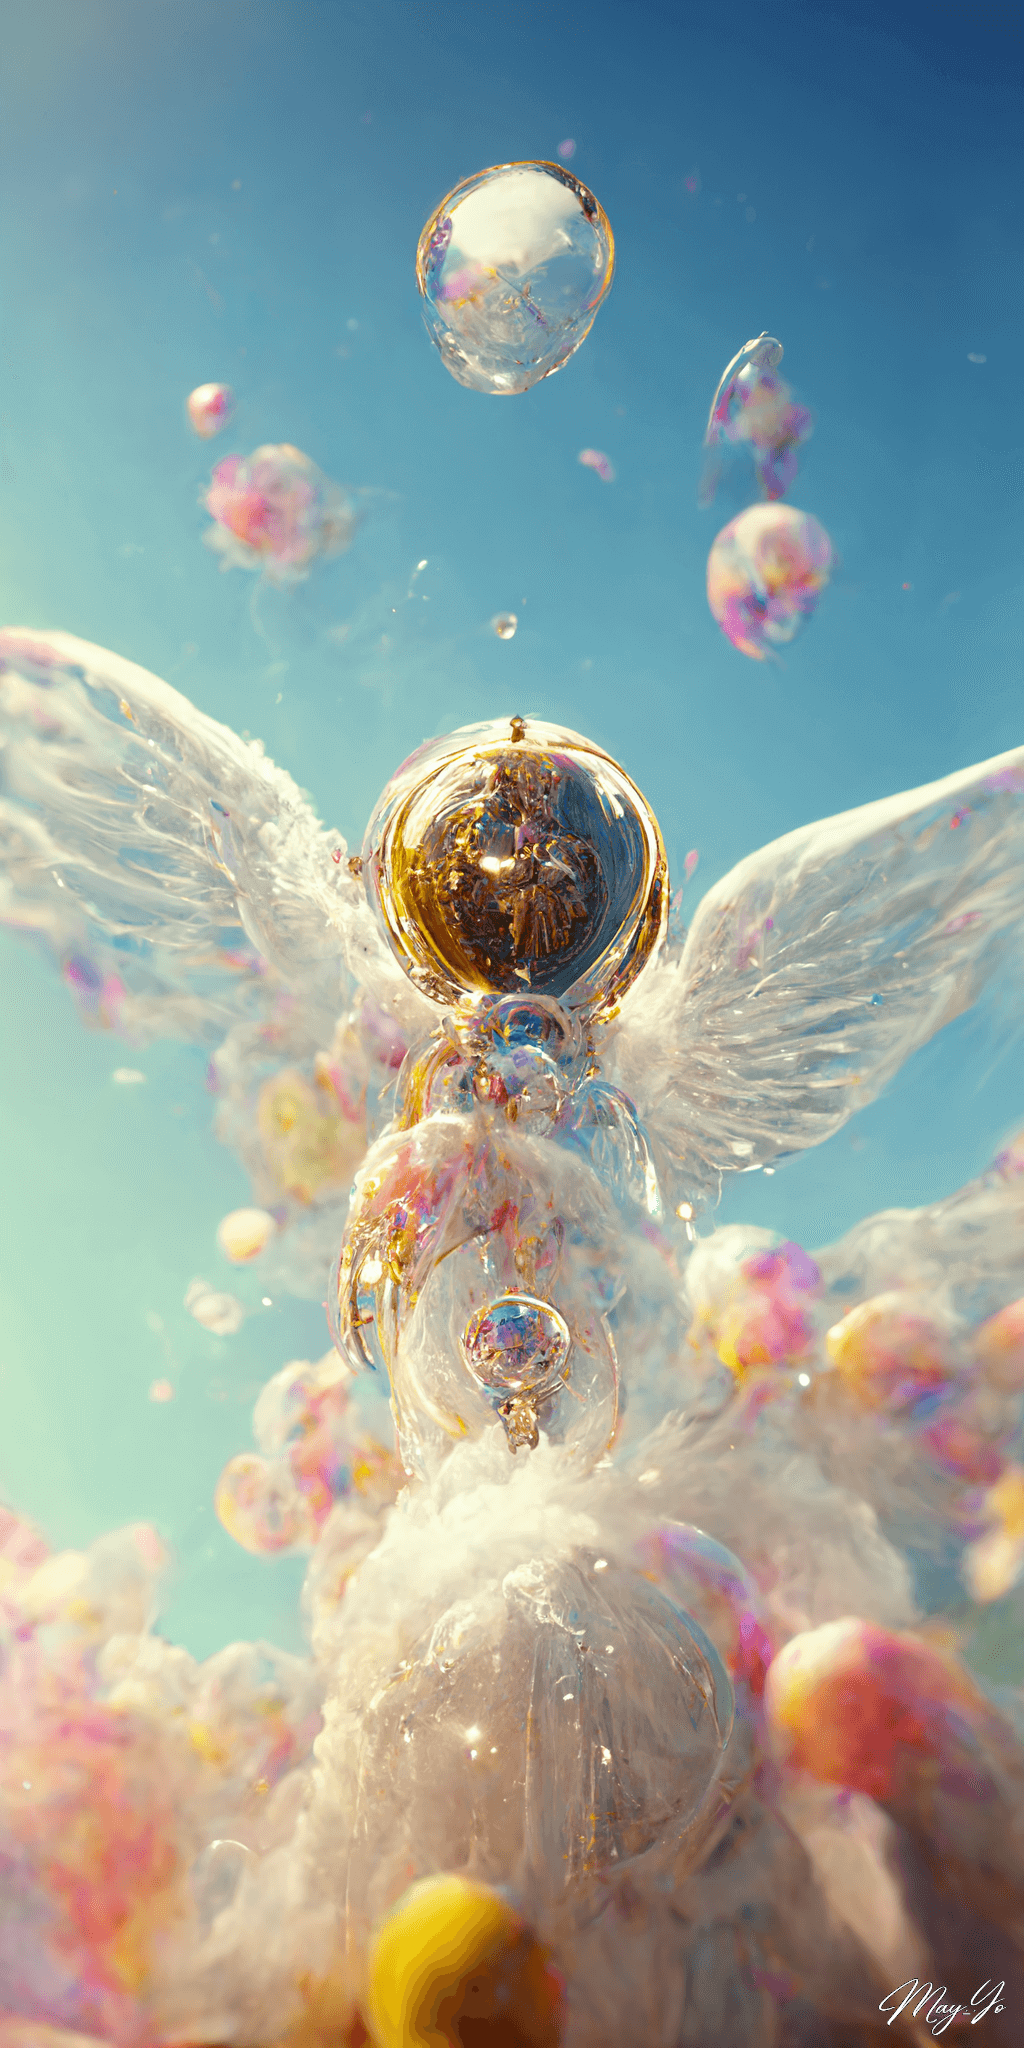 天使が作る虹色のシャボン玉のイラスト壁紙 天空のシャボン玉の待受 AIイラスト待受 縦長画像 angel bubble illustration rainbow